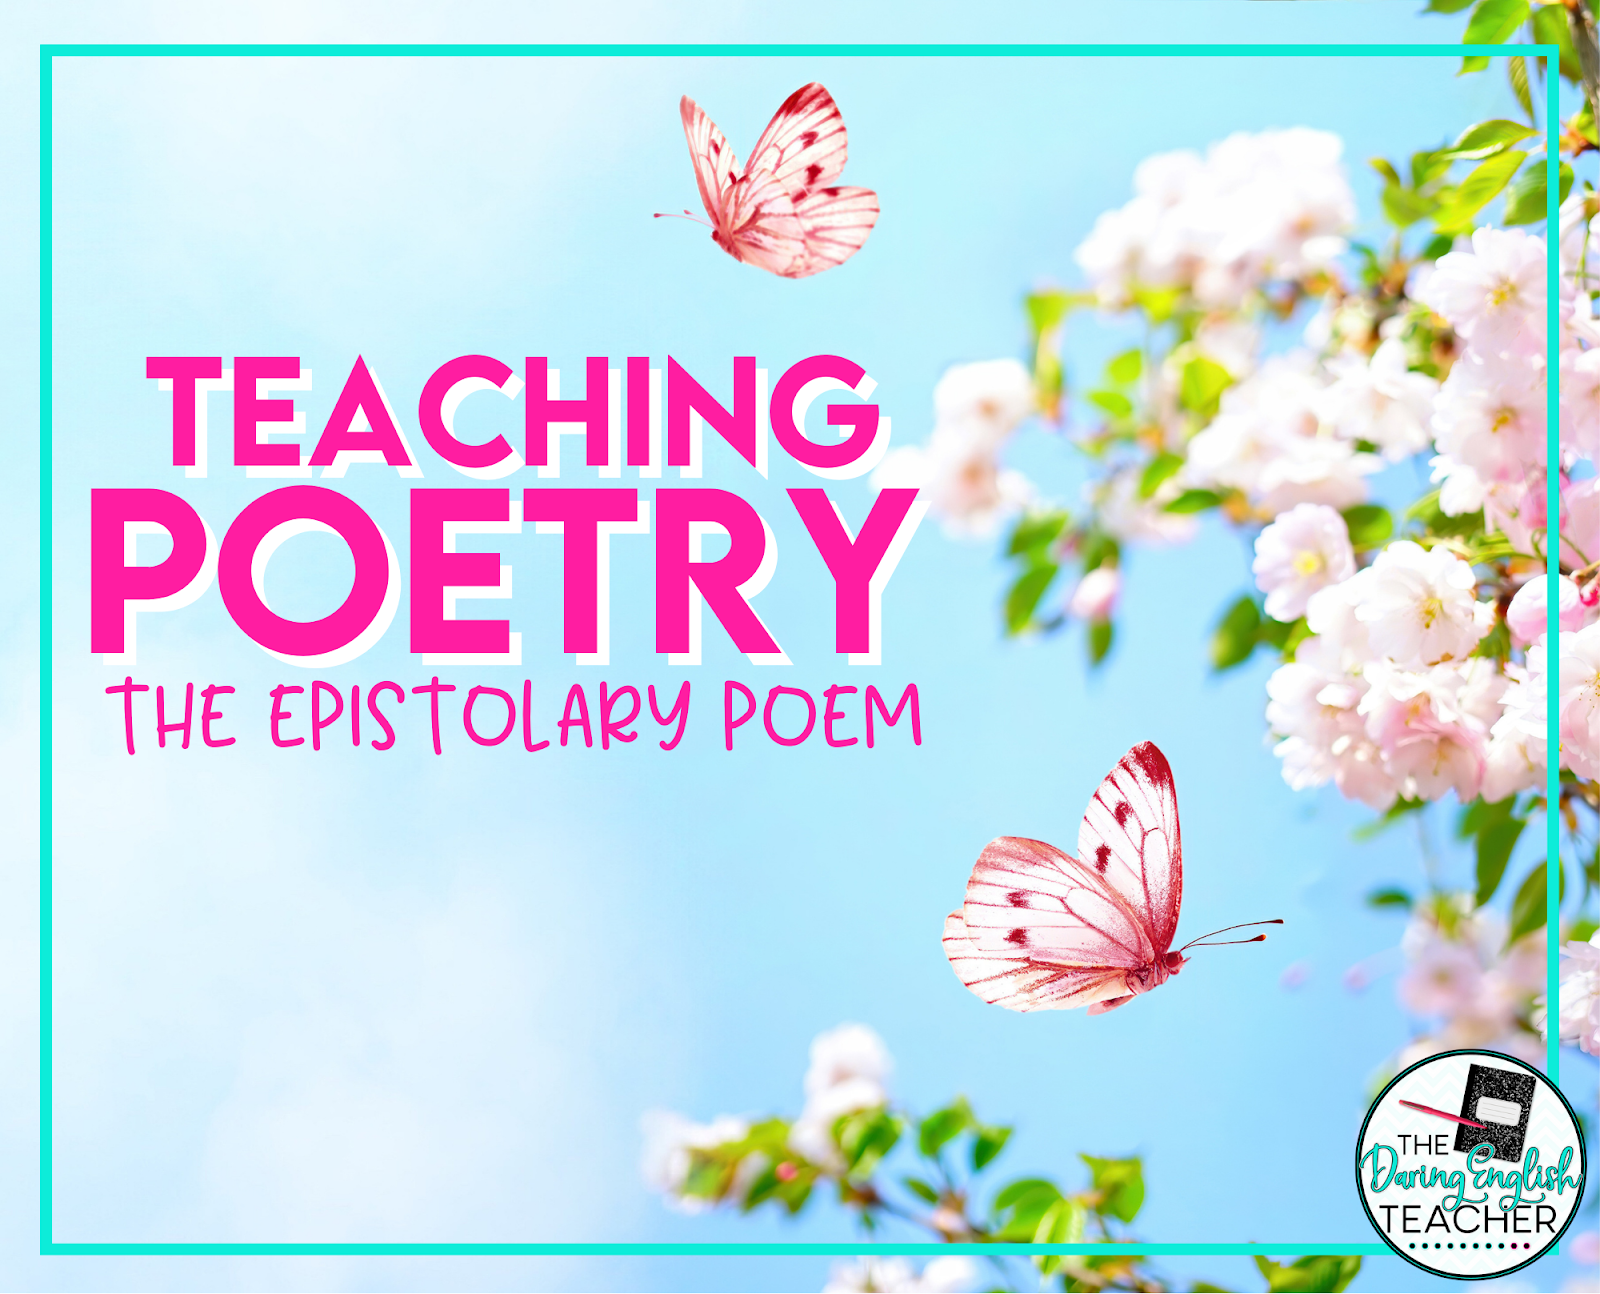 Teaching Poetry: The Epistolary Poem